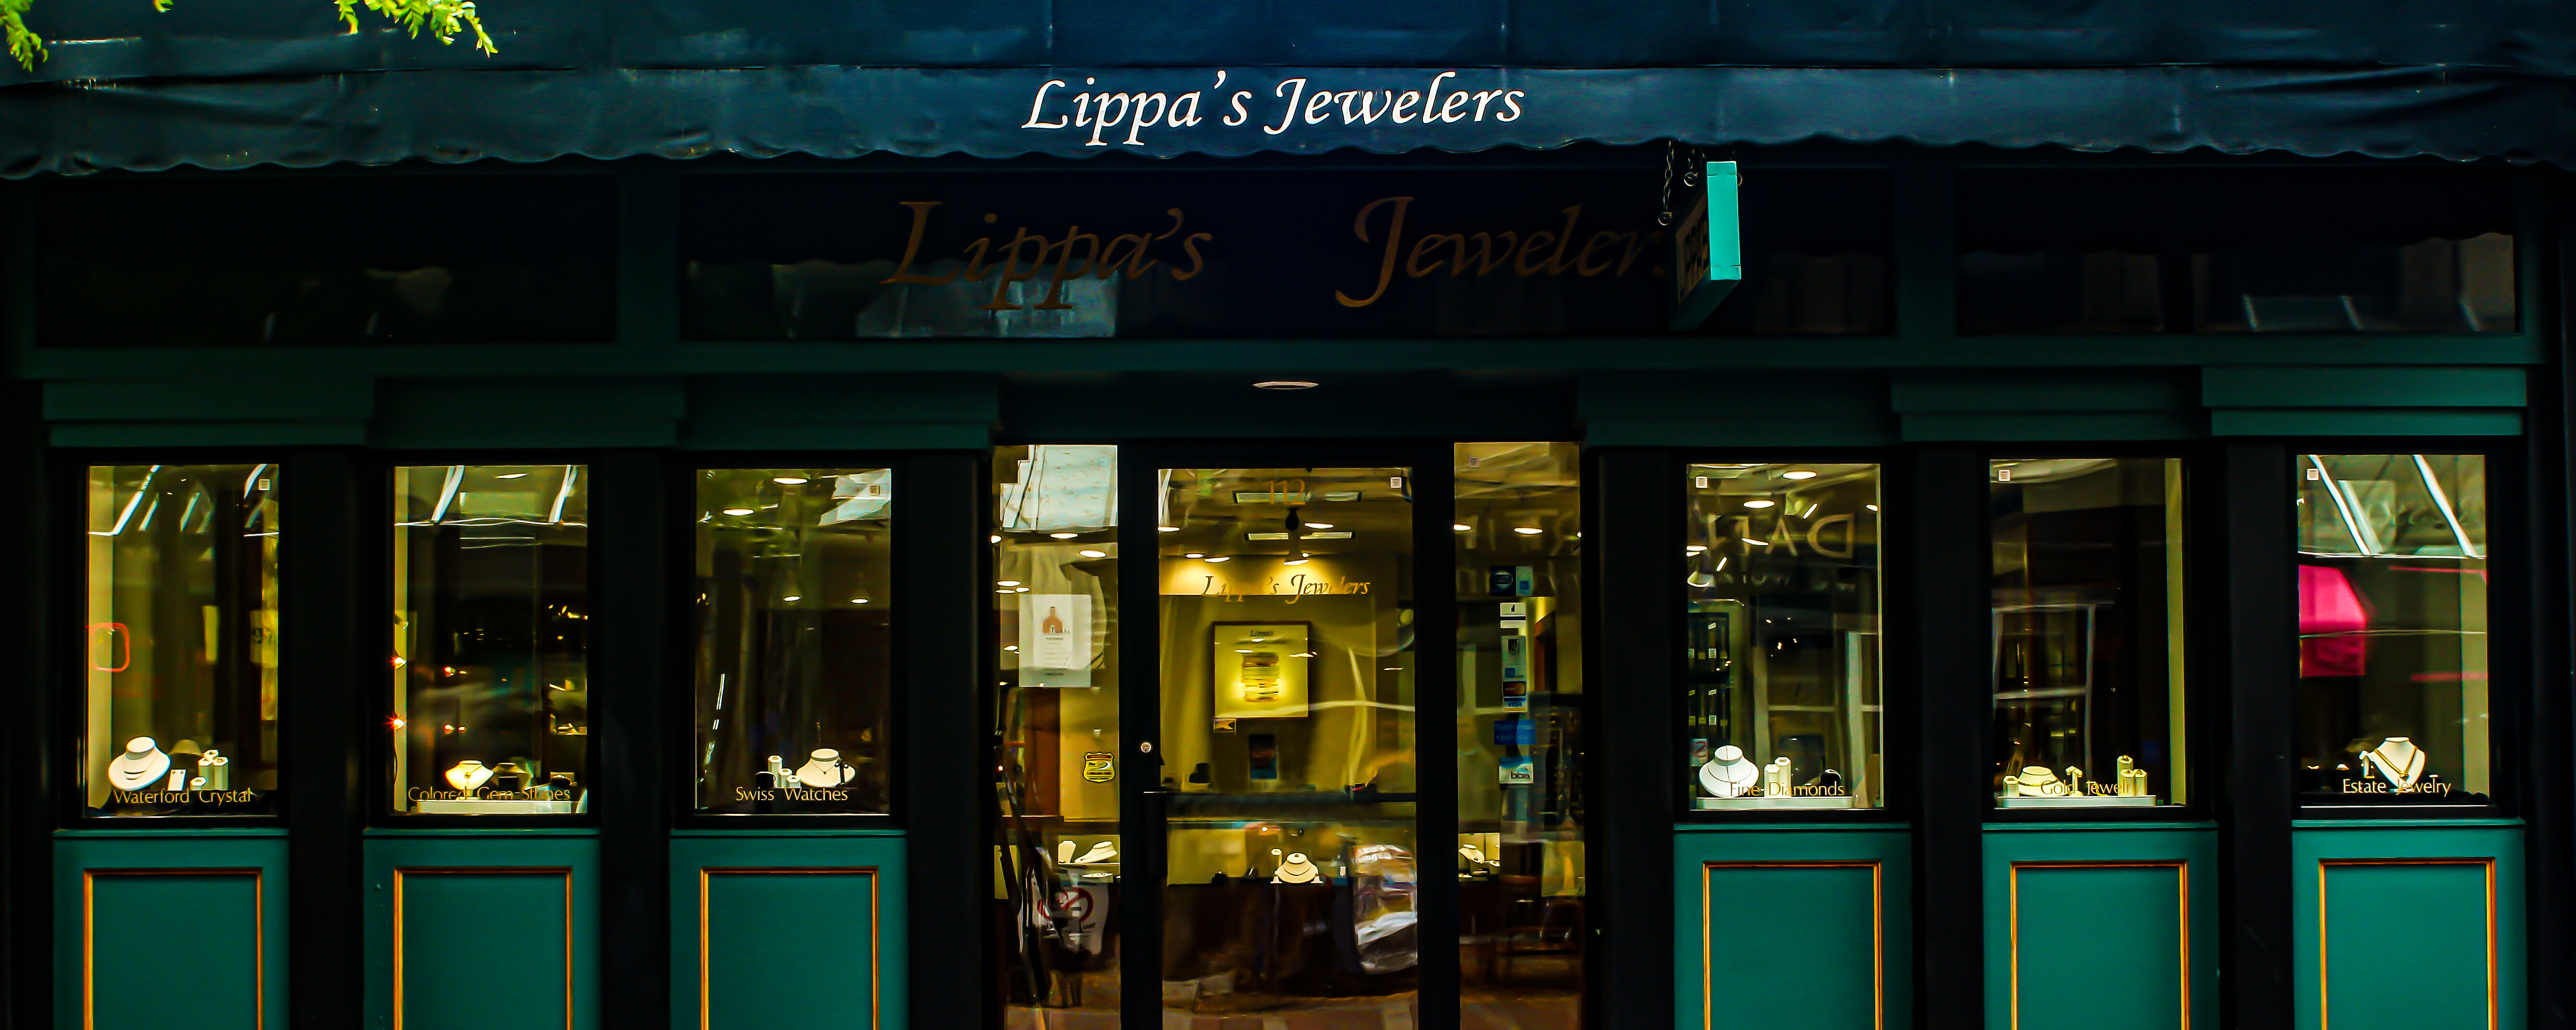 Lippa's Jewelers